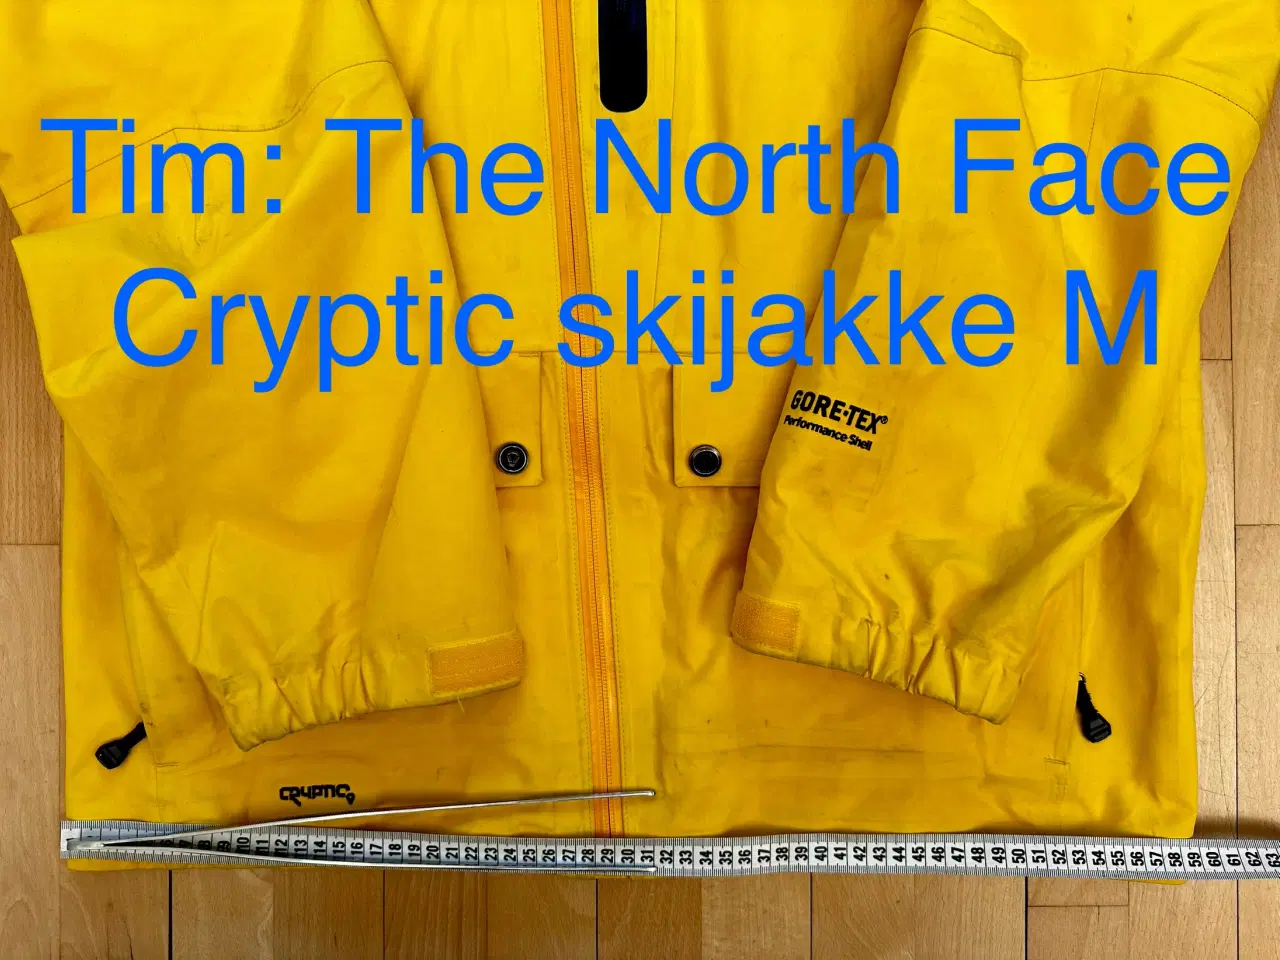 Billede 10 - The North Face Cryptic skijakke M 